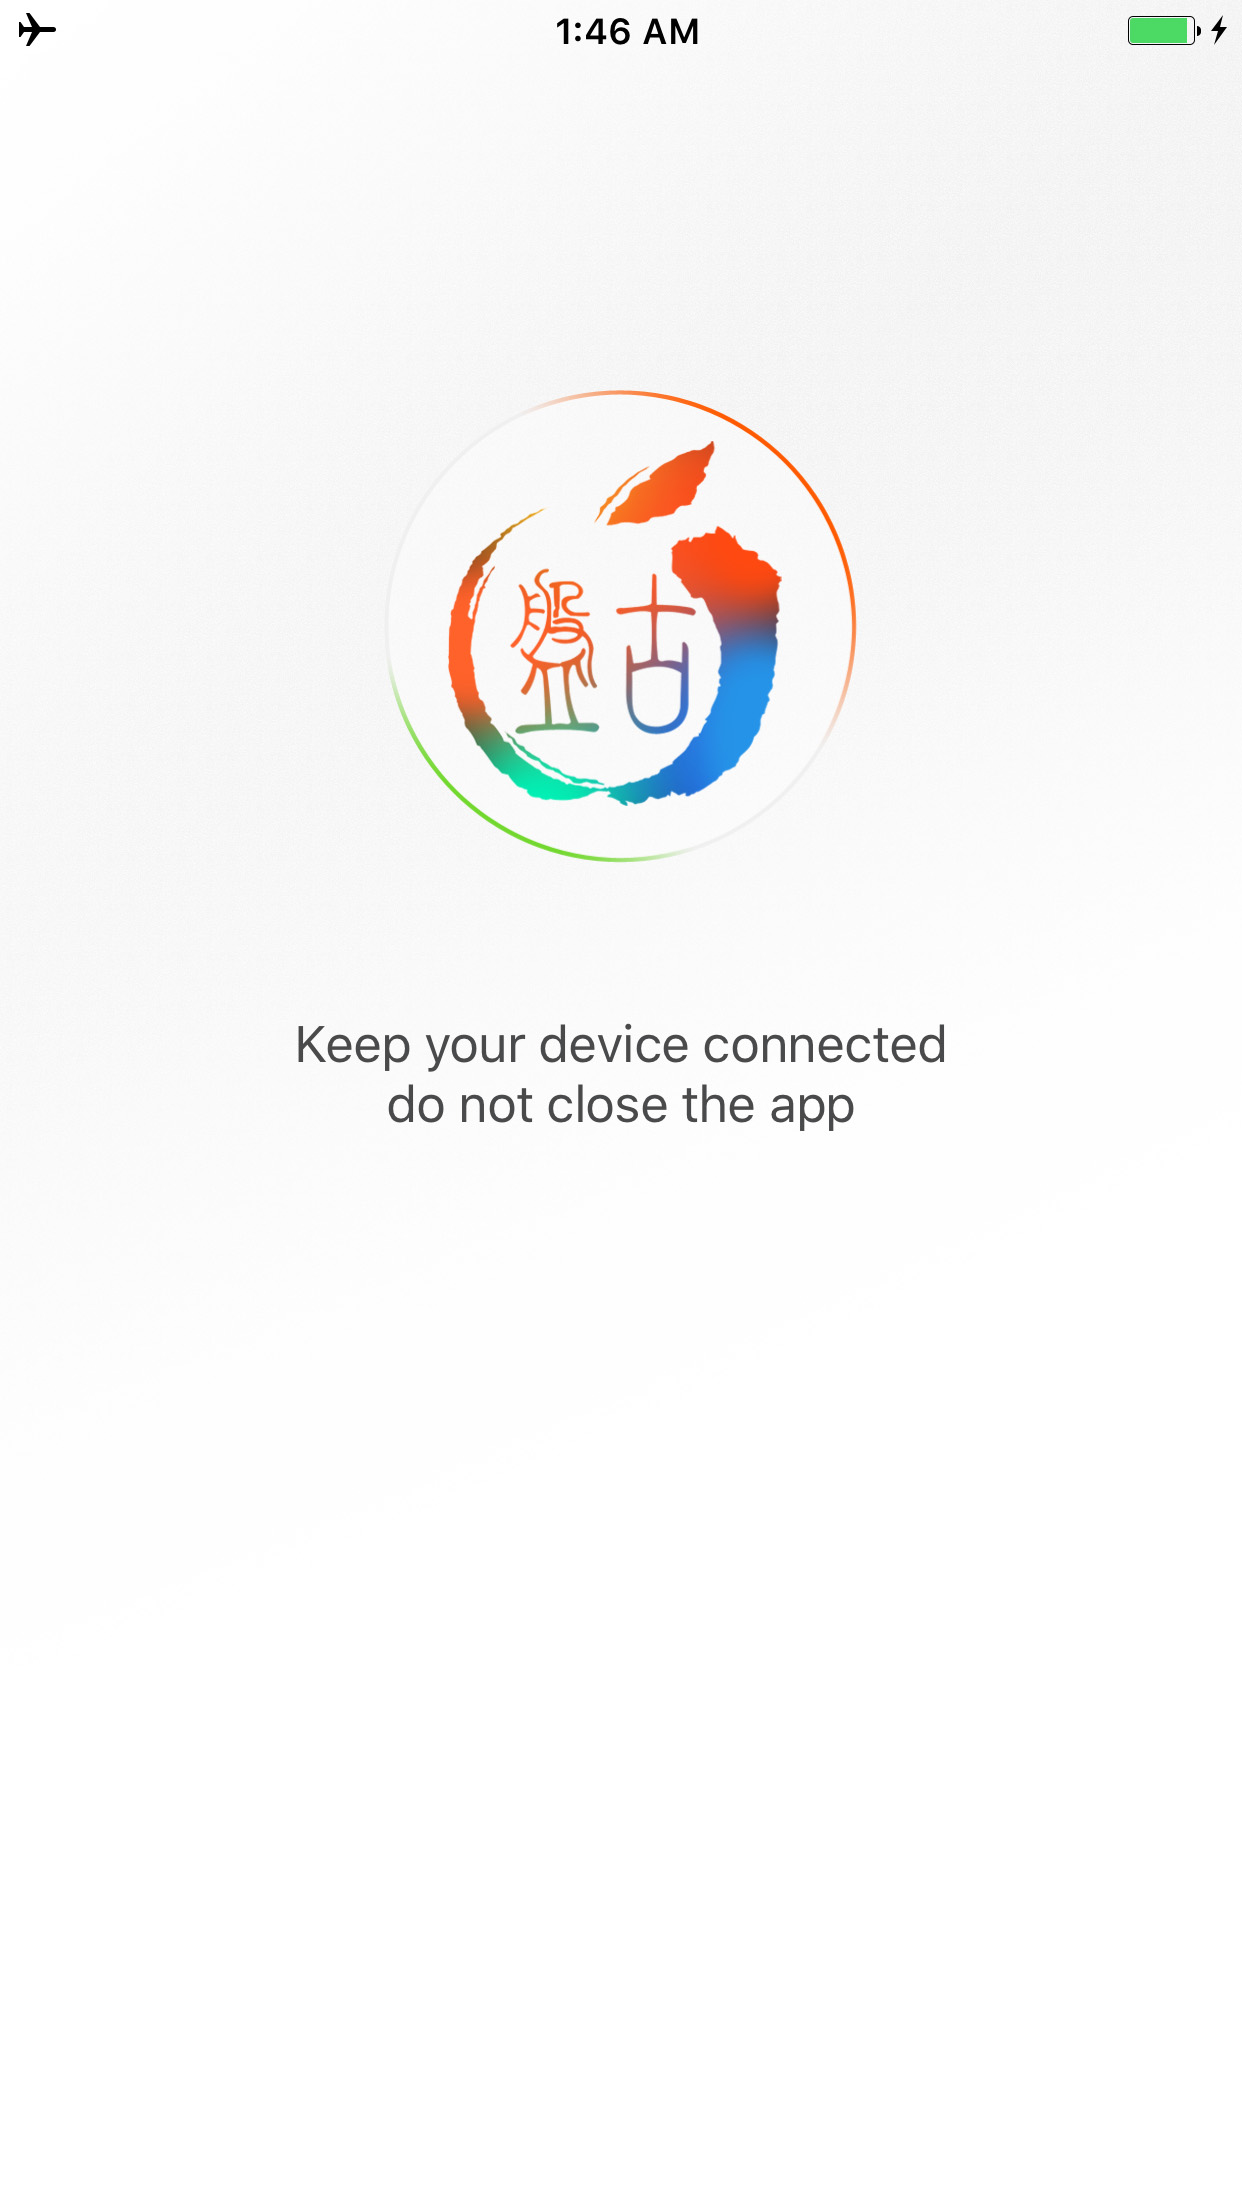 Πώς να κάνετε Jailbreak το iPhone σας,στην έκδοση iOS 9 (Windows) [9.0.2]